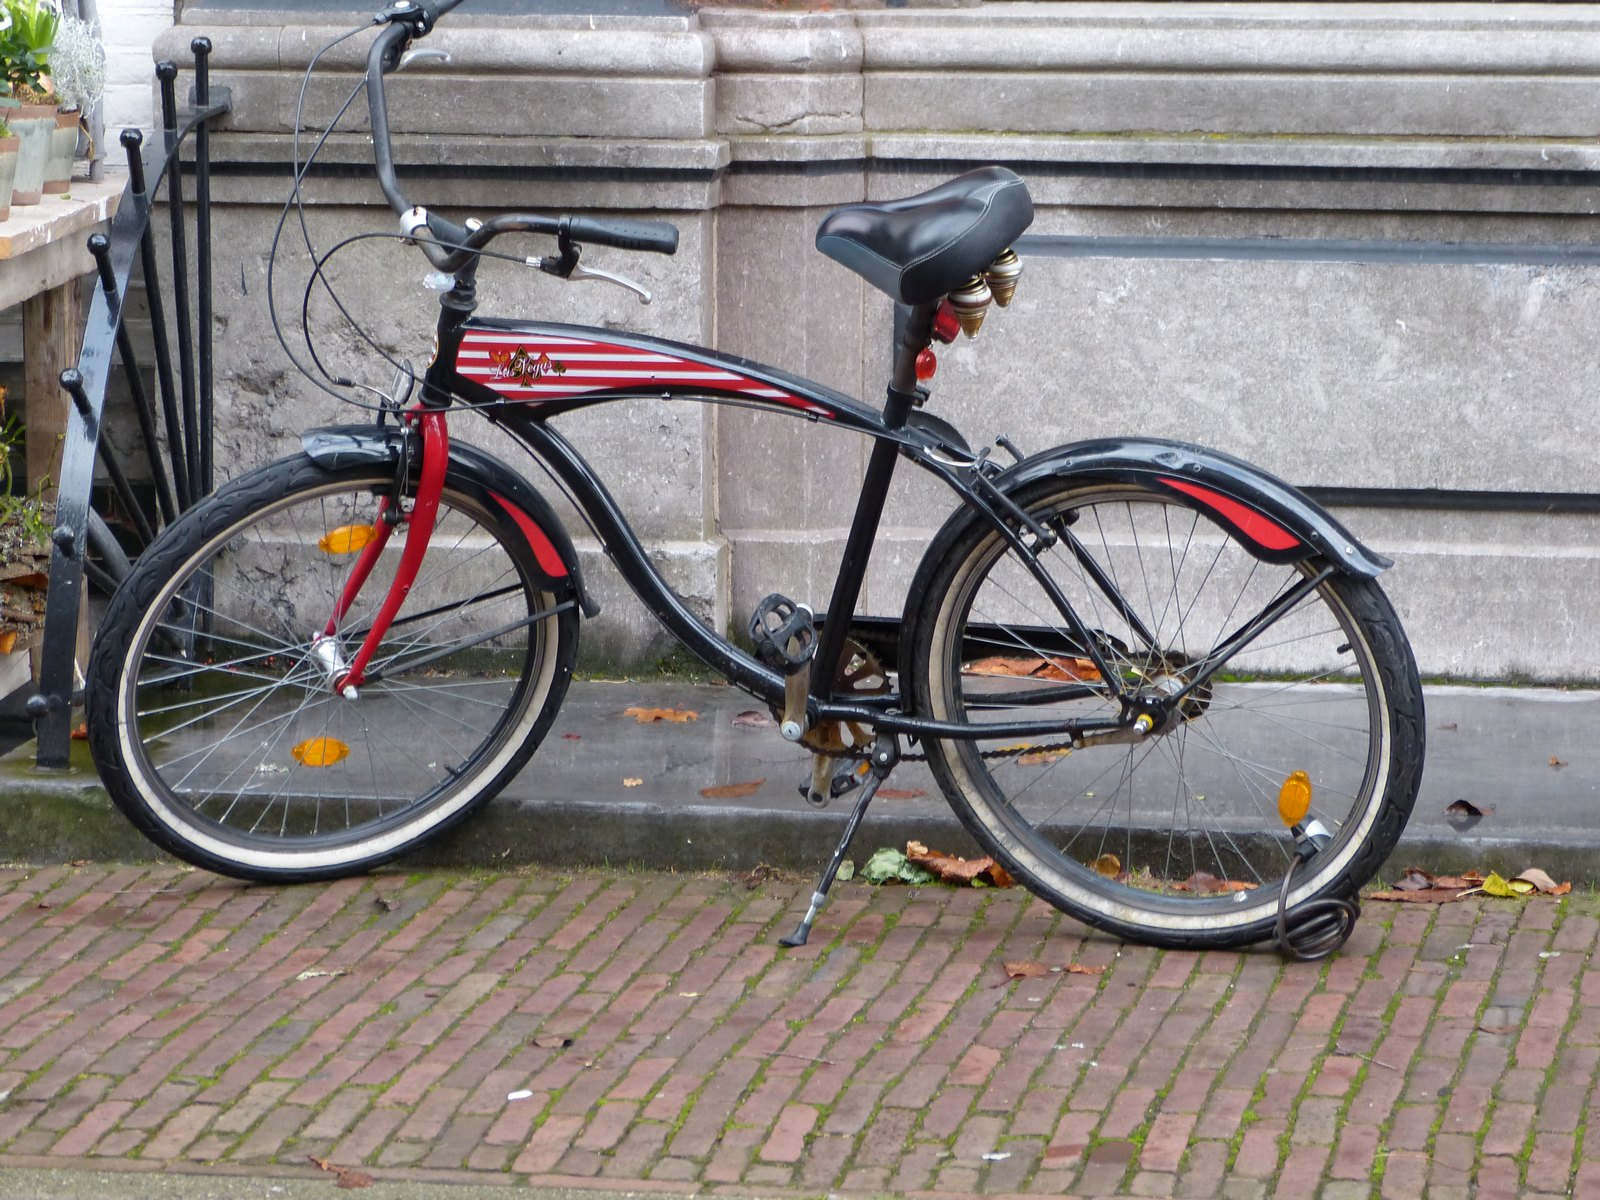 Bike chopper com quadro mais próximo ao de bicicletas normais, mas ainda modificado. Foto de Nik Morris, Flickr.